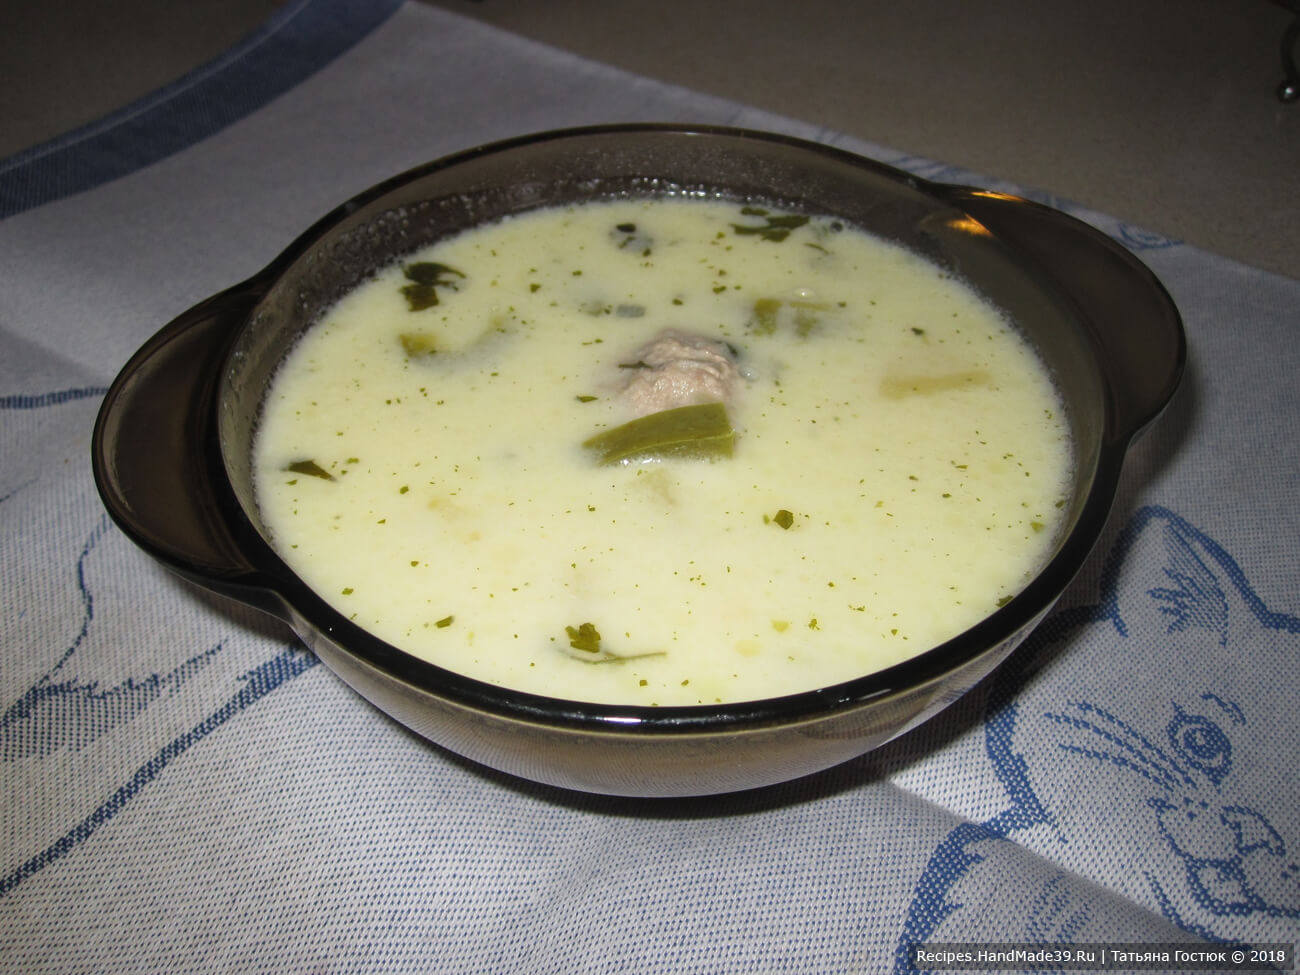 Подаём сырный суп с фрикадельками горячим. Поверьте, это неимоверно вкусно, попробуйте! Приятного аппетита!